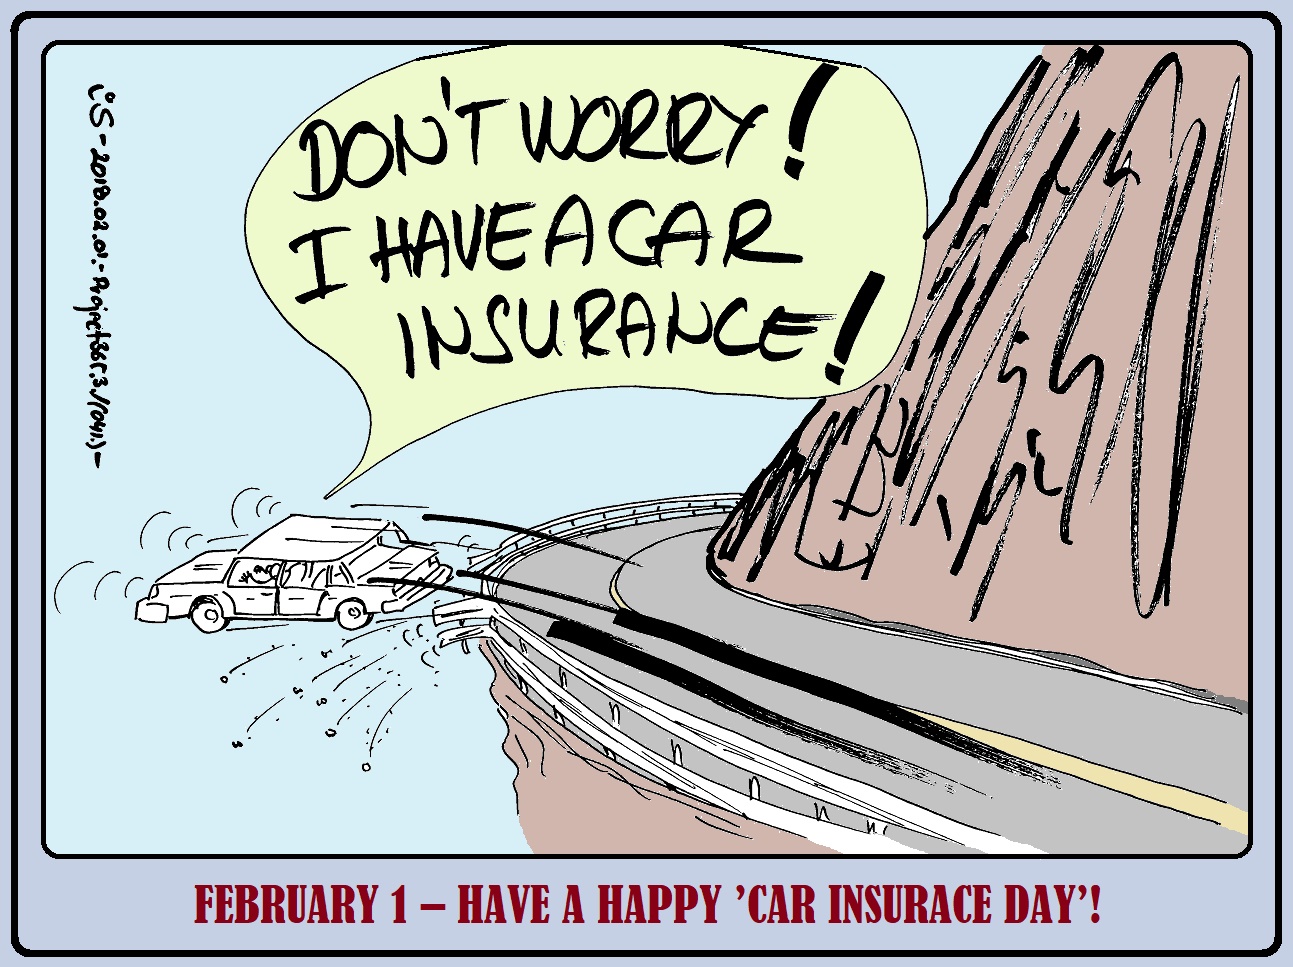 02_01_car_insurance.jpg